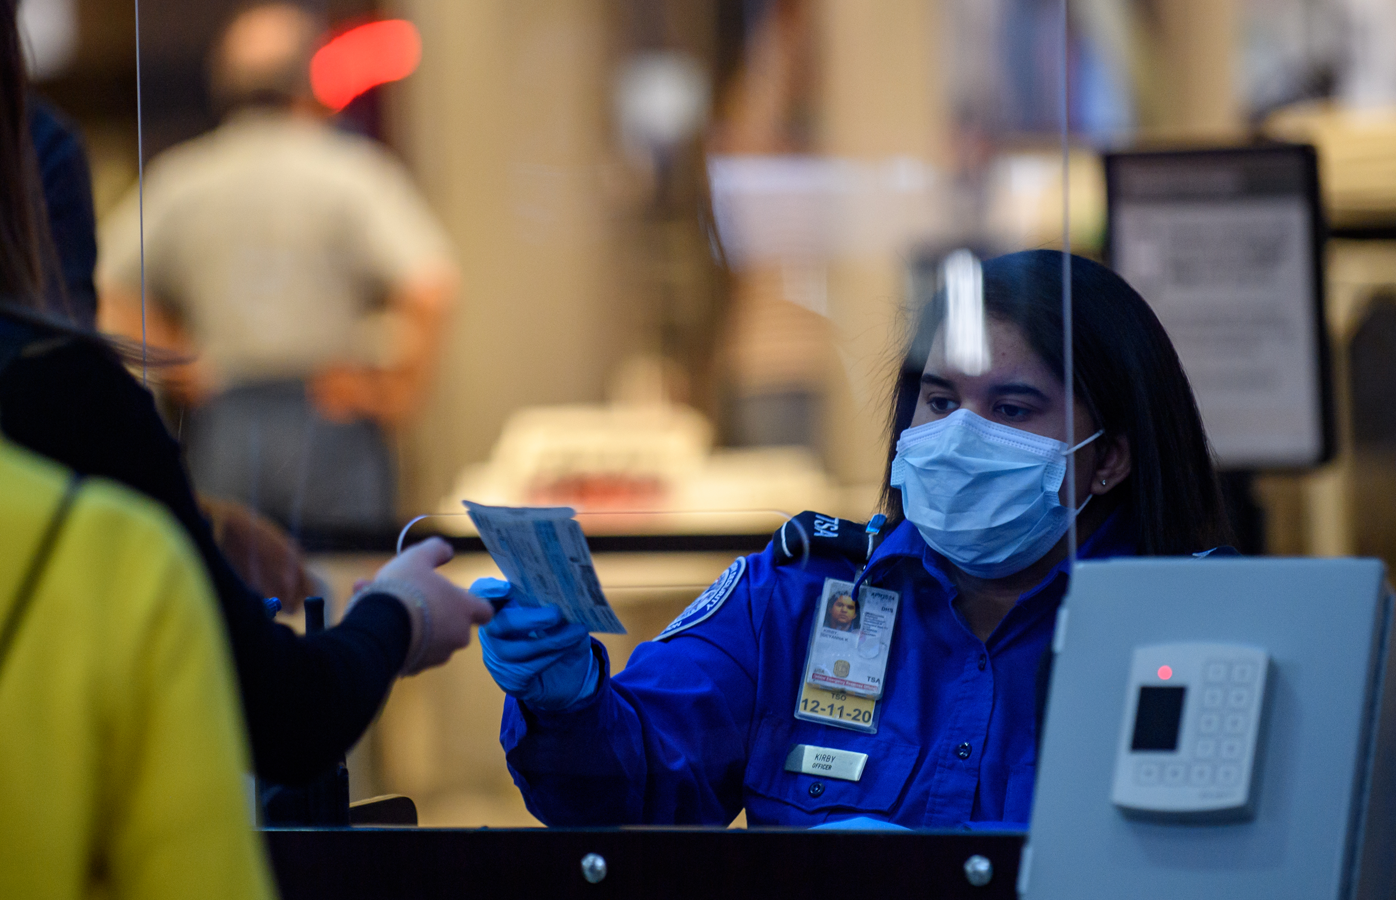 TSA security staff wearing a mask